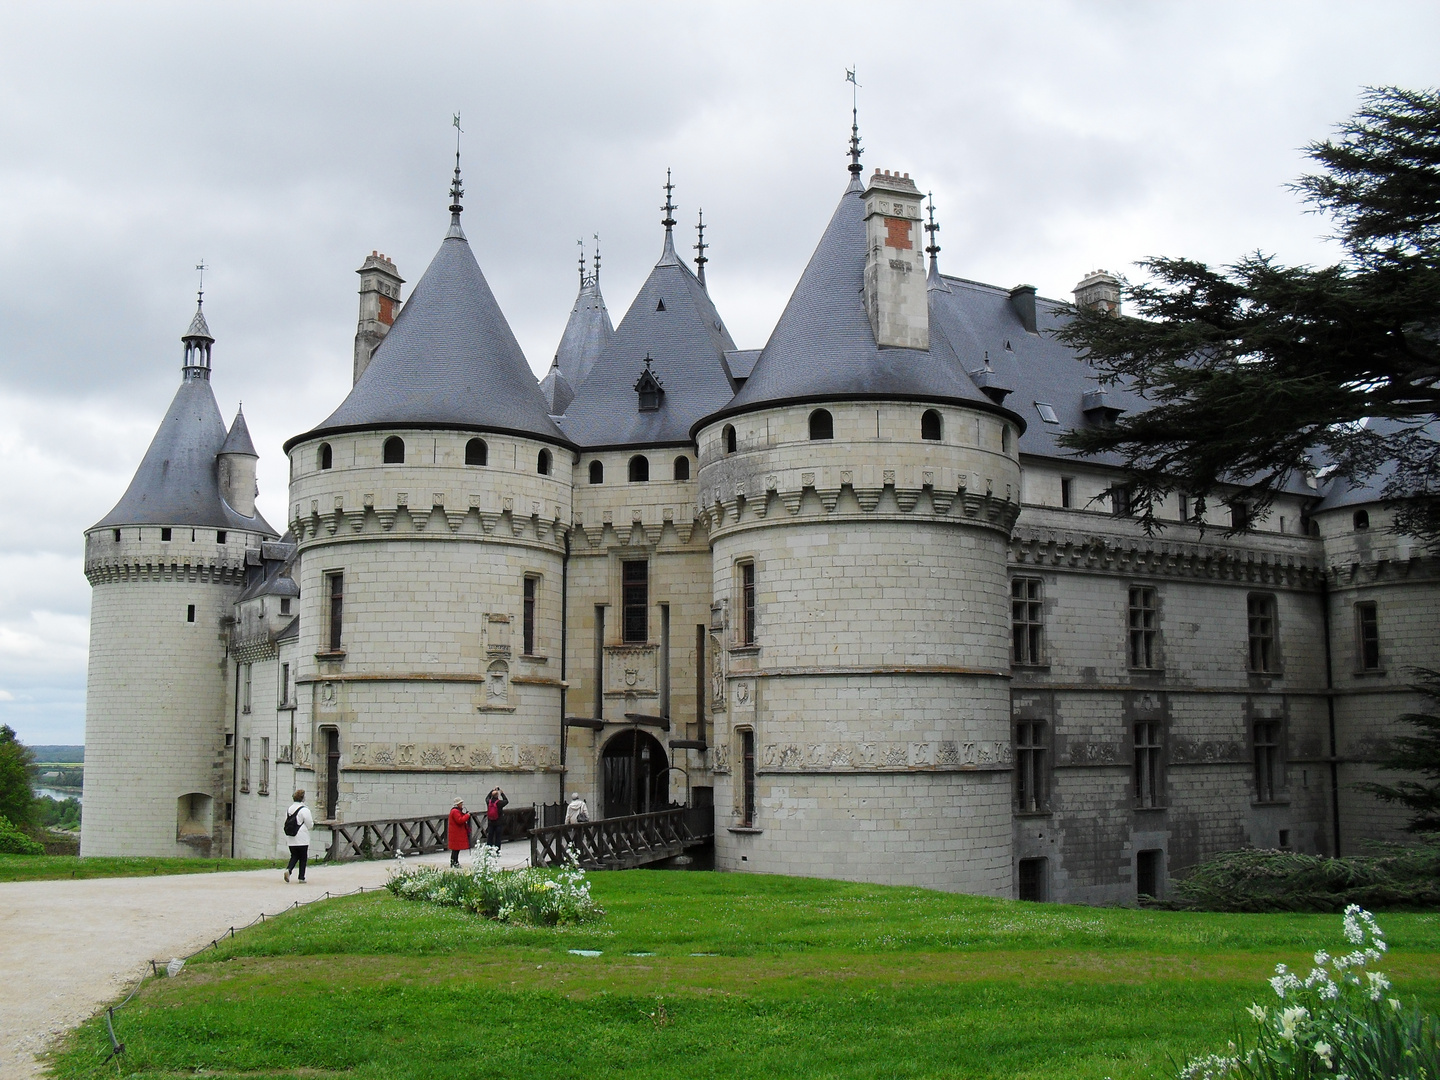 château de Chaumont sur Loire